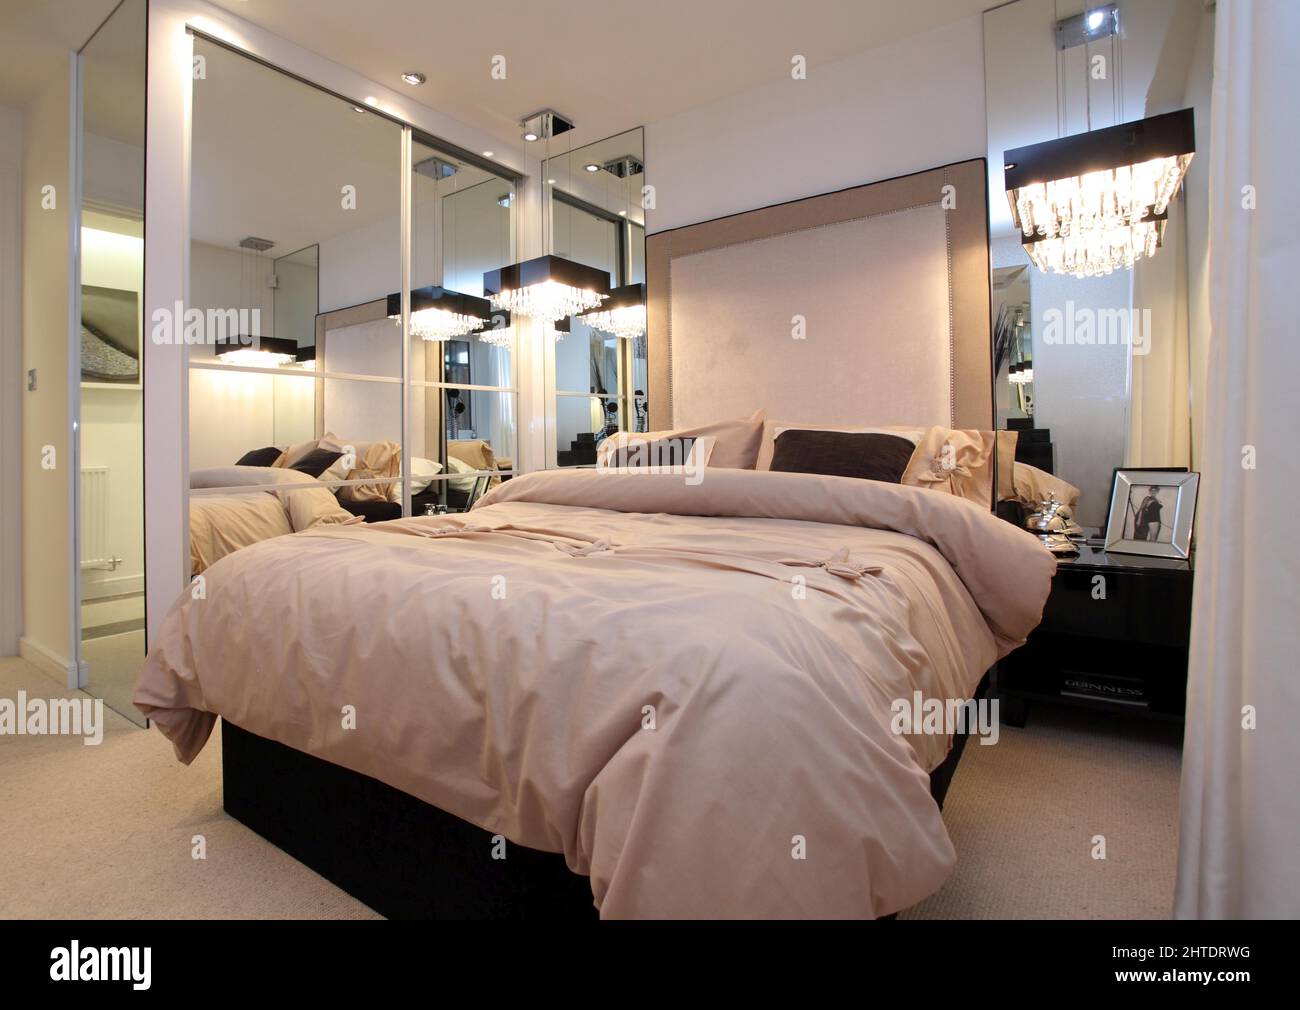 Chambre moderne dans la maison neuve, couvre-lit, tête de lit rembourrée, miroir armoire miroir, beige blanc crème couleur neutre, grands miroirs augmentent Banque D'Images